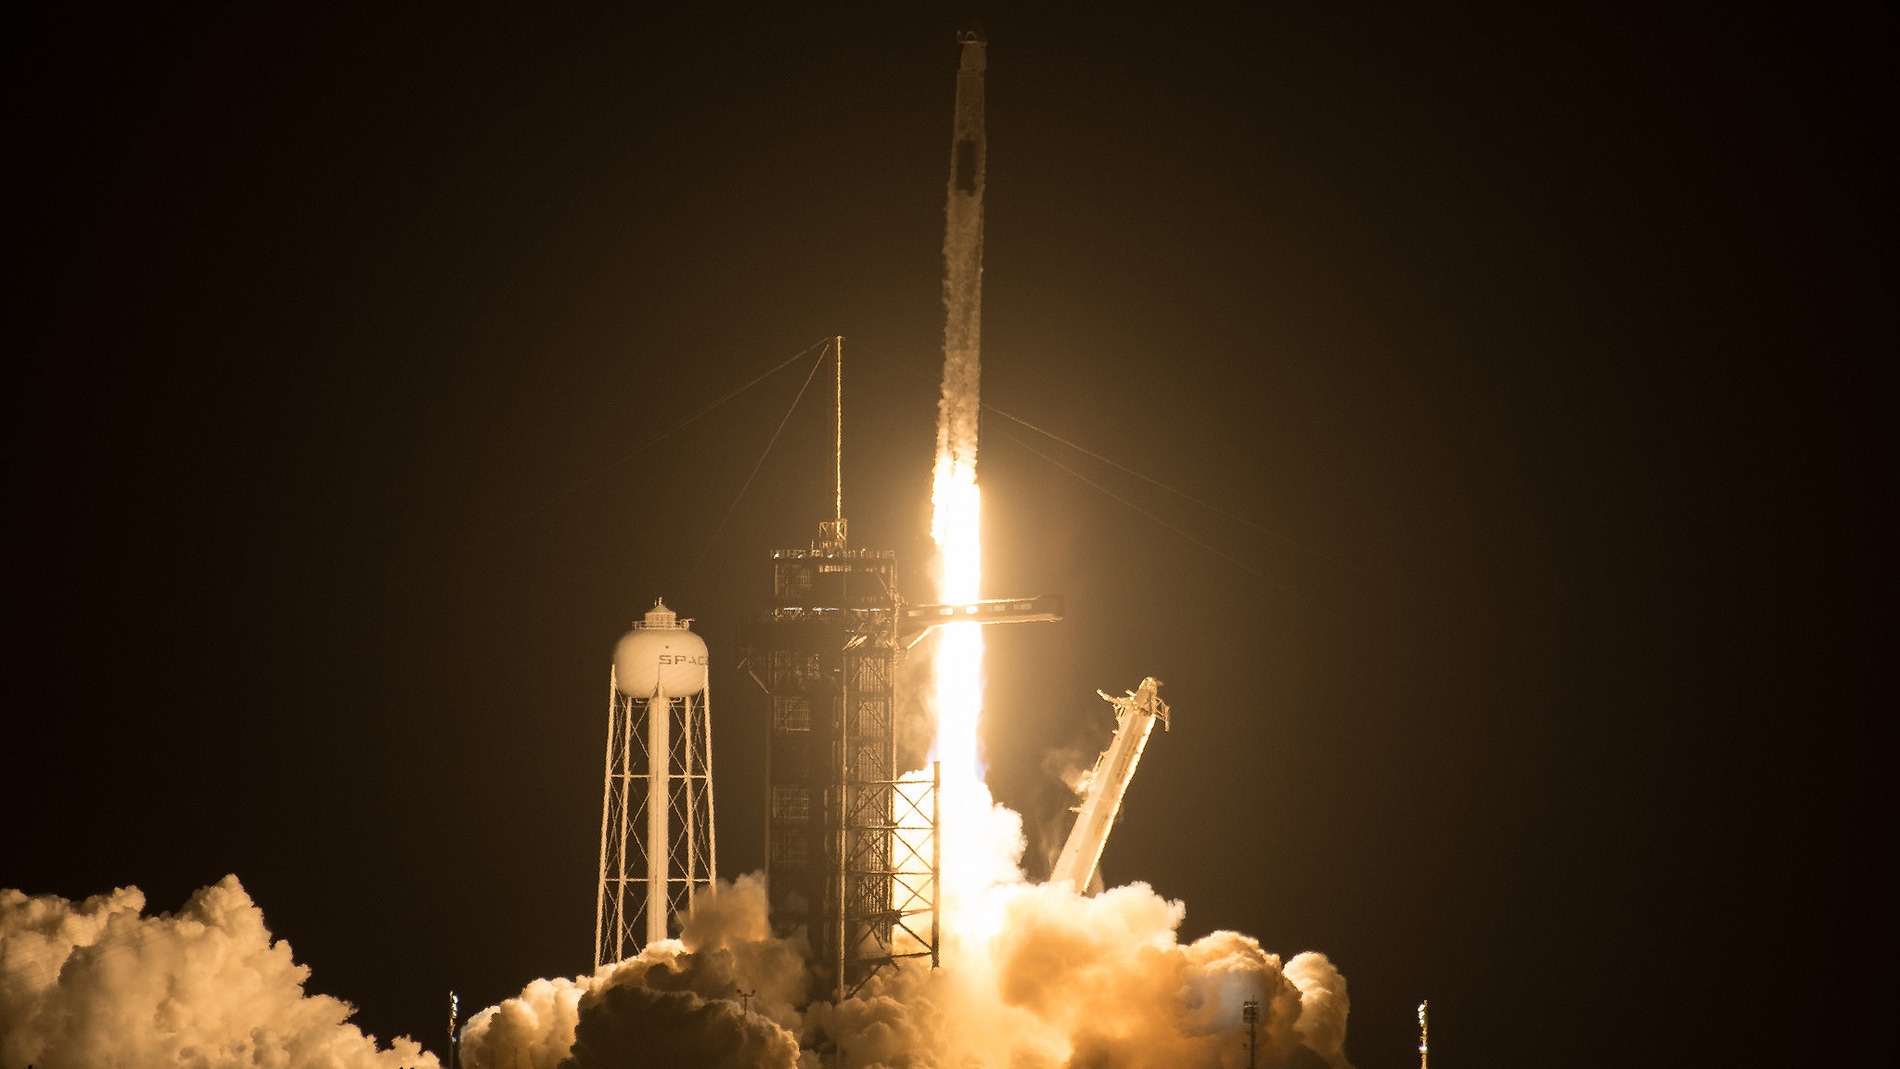 Despega la segunda mision tripulada de la NASA y SpaceX a la Estacion Espacial Internacional